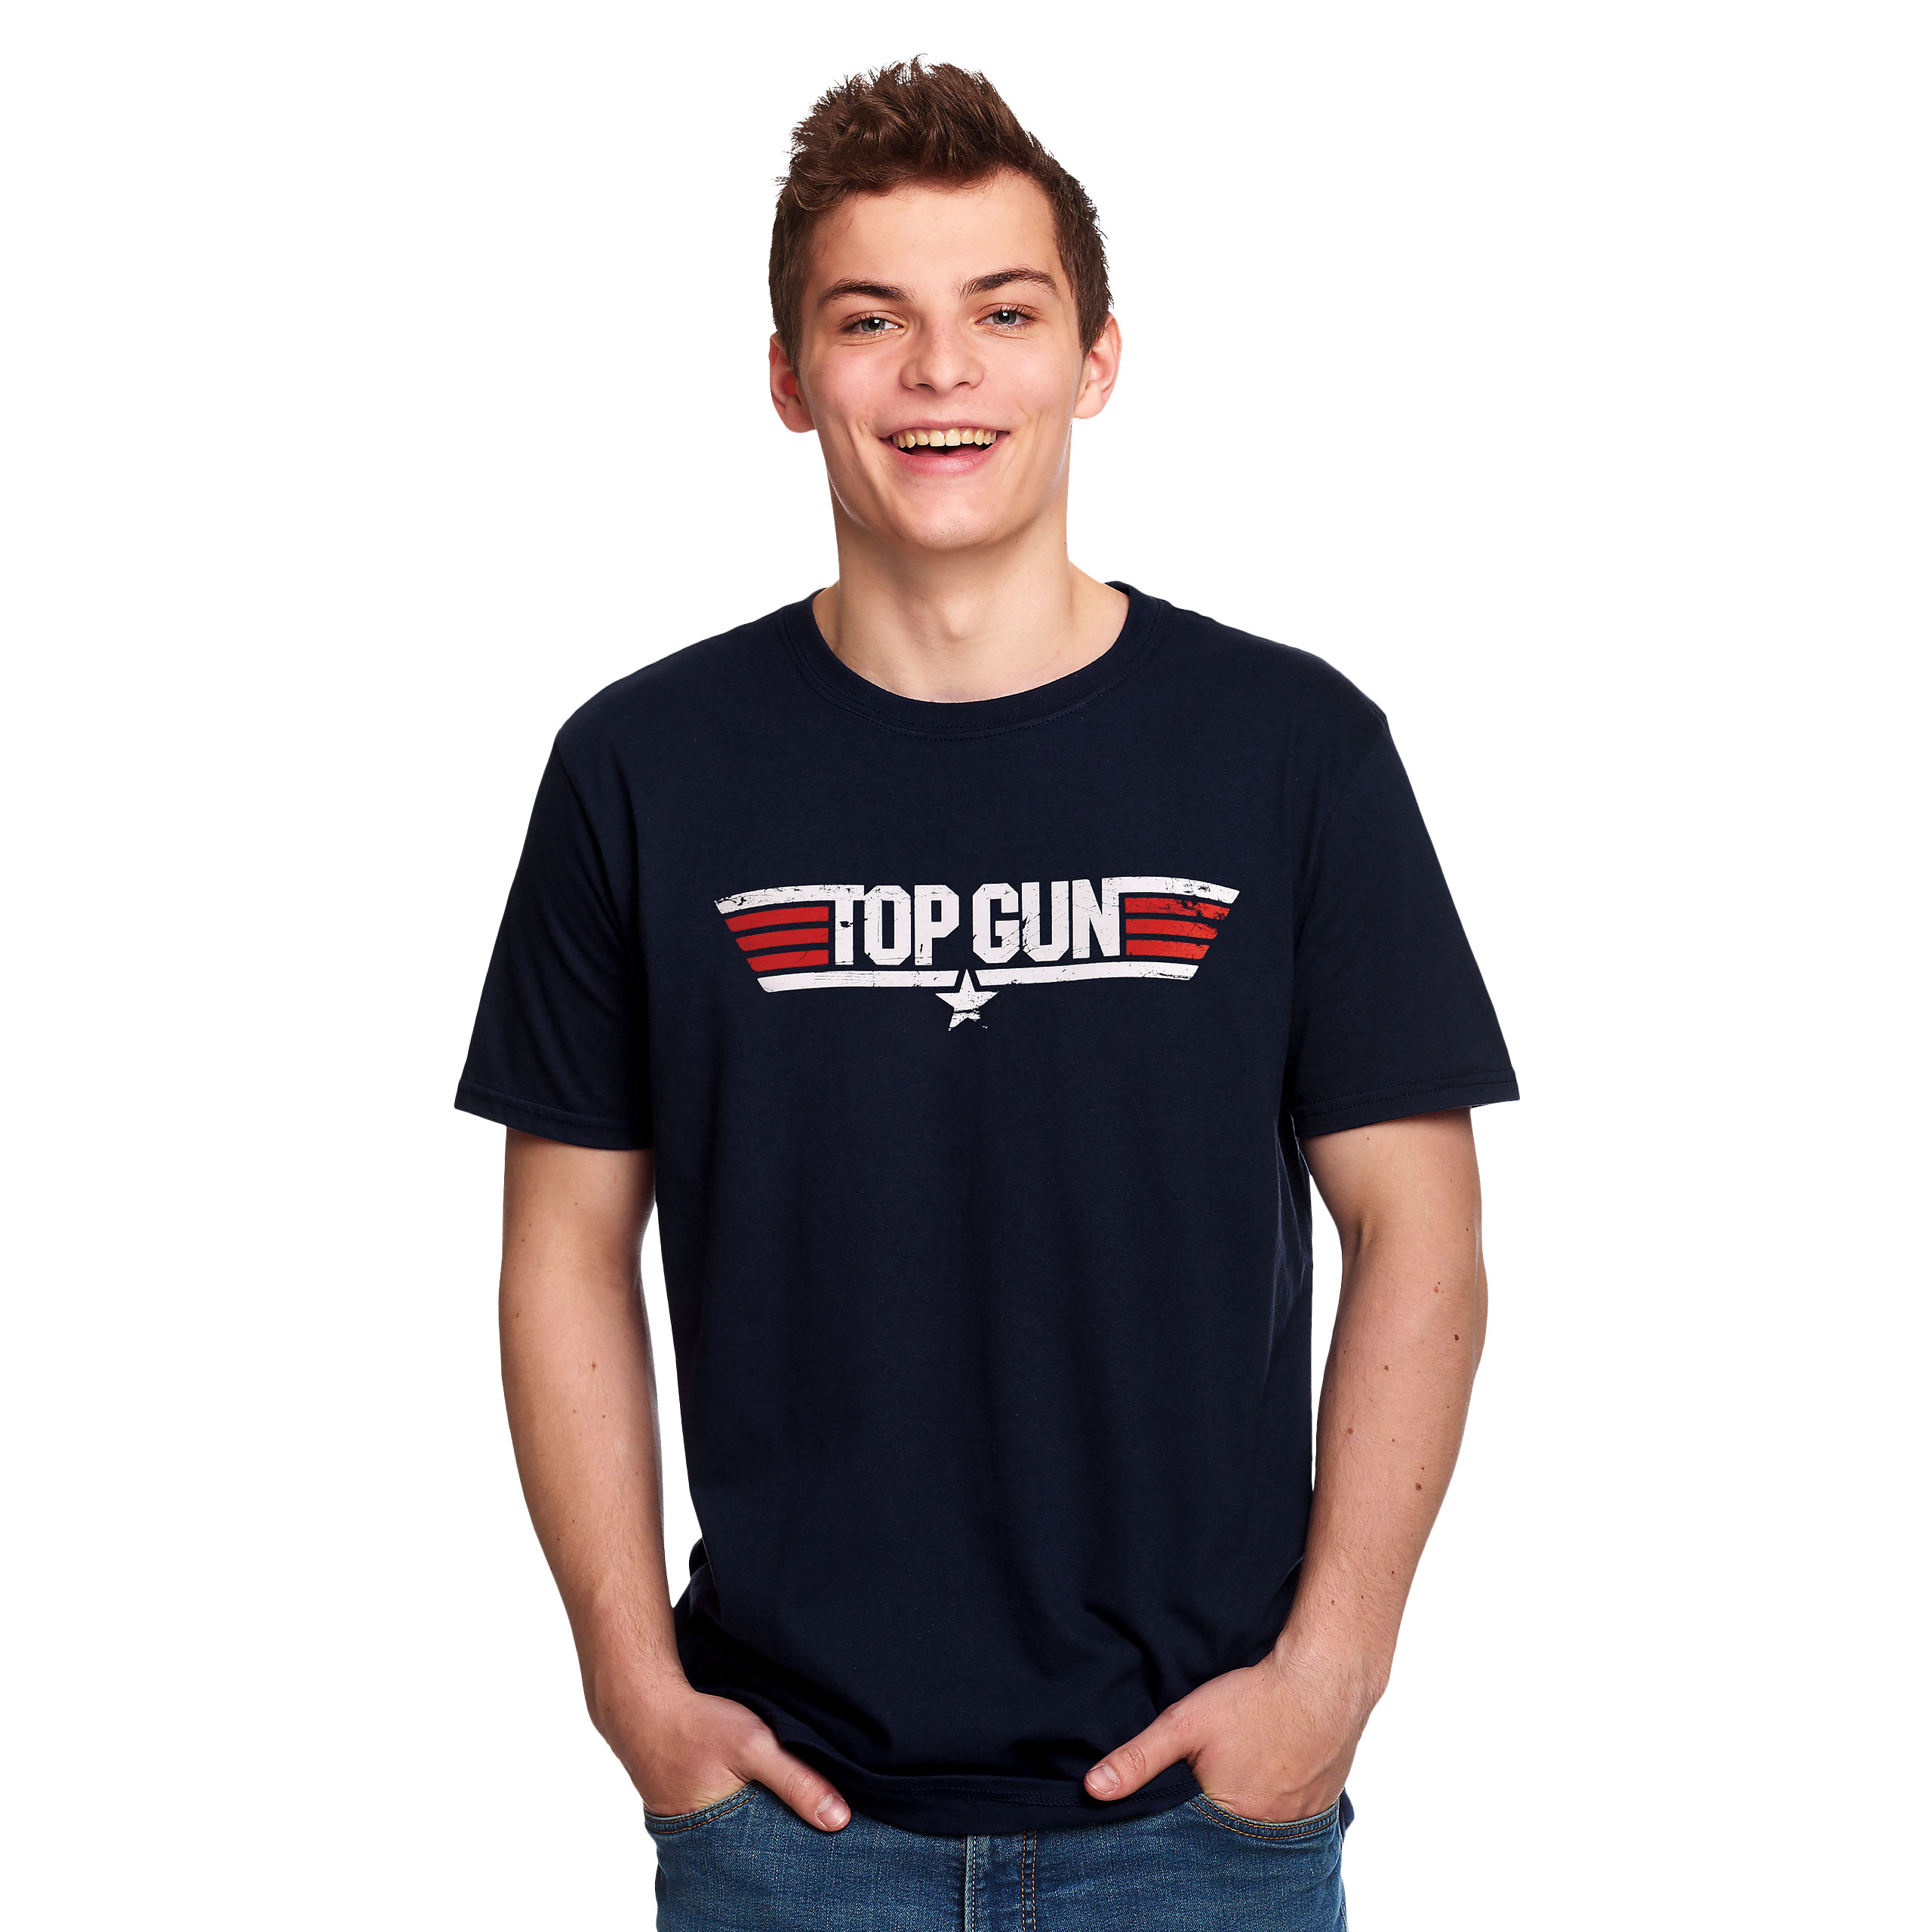 Top Gun - T-shirt logo bleu